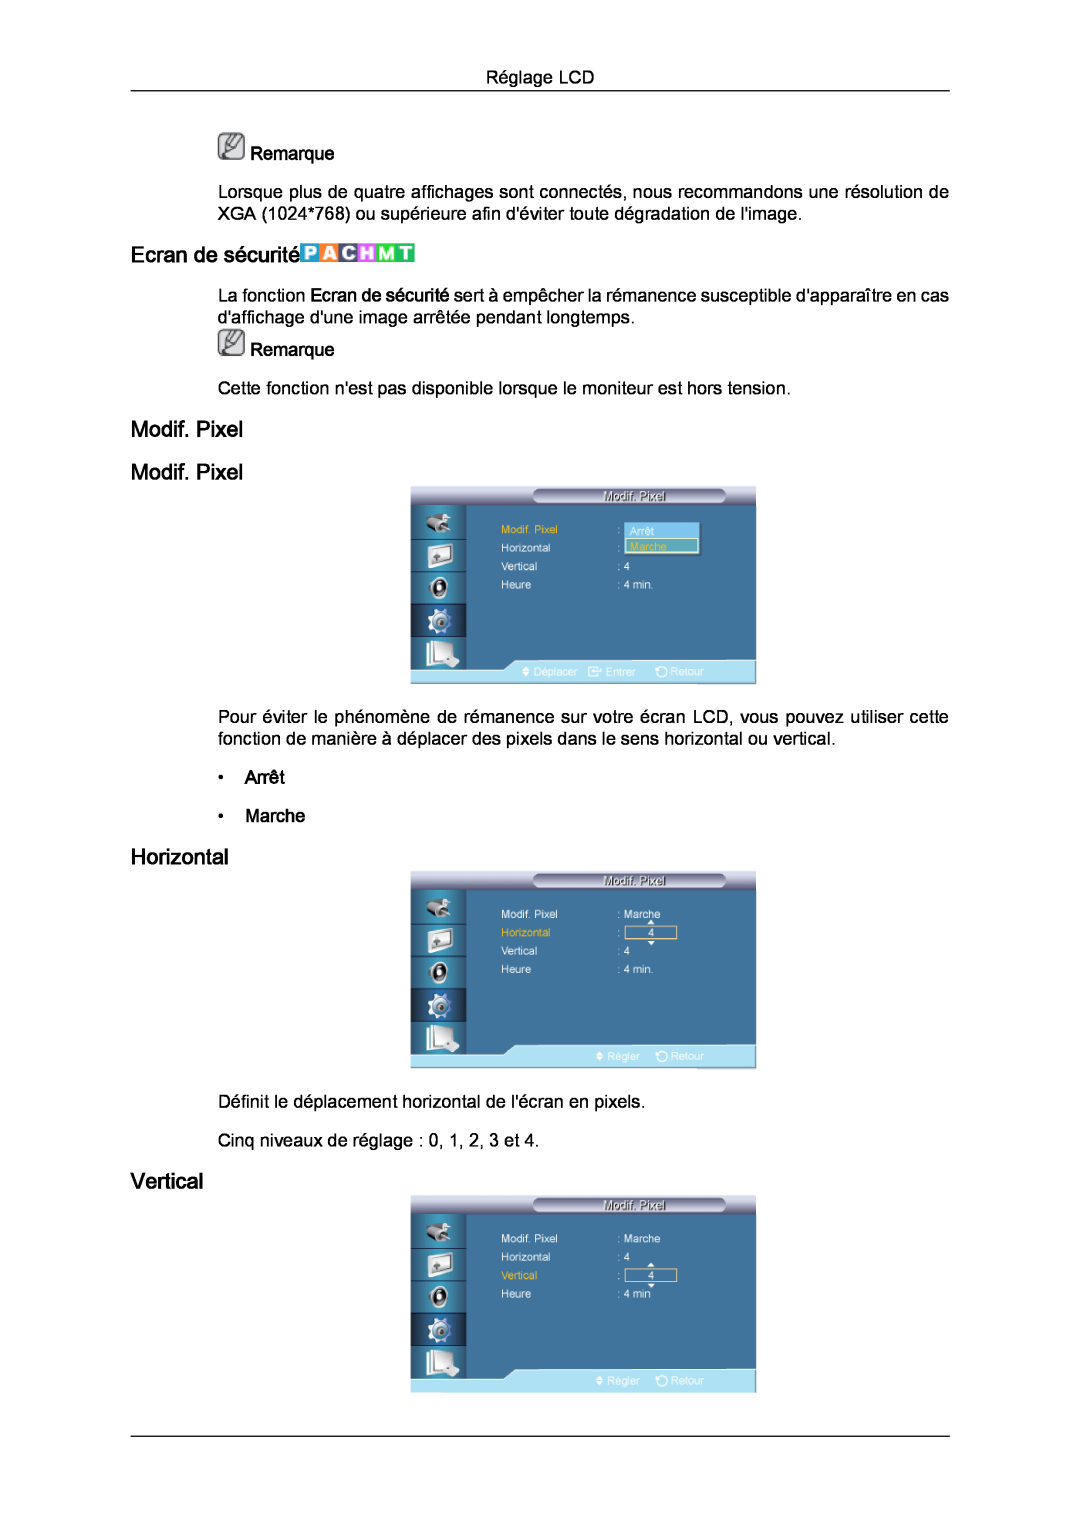 Samsung LH32CRSMBC/EN manual Ecran de sécurité, Modif. Pixel Modif. Pixel, Horizontal, Vertical, Remarque, Arrêt Marche 